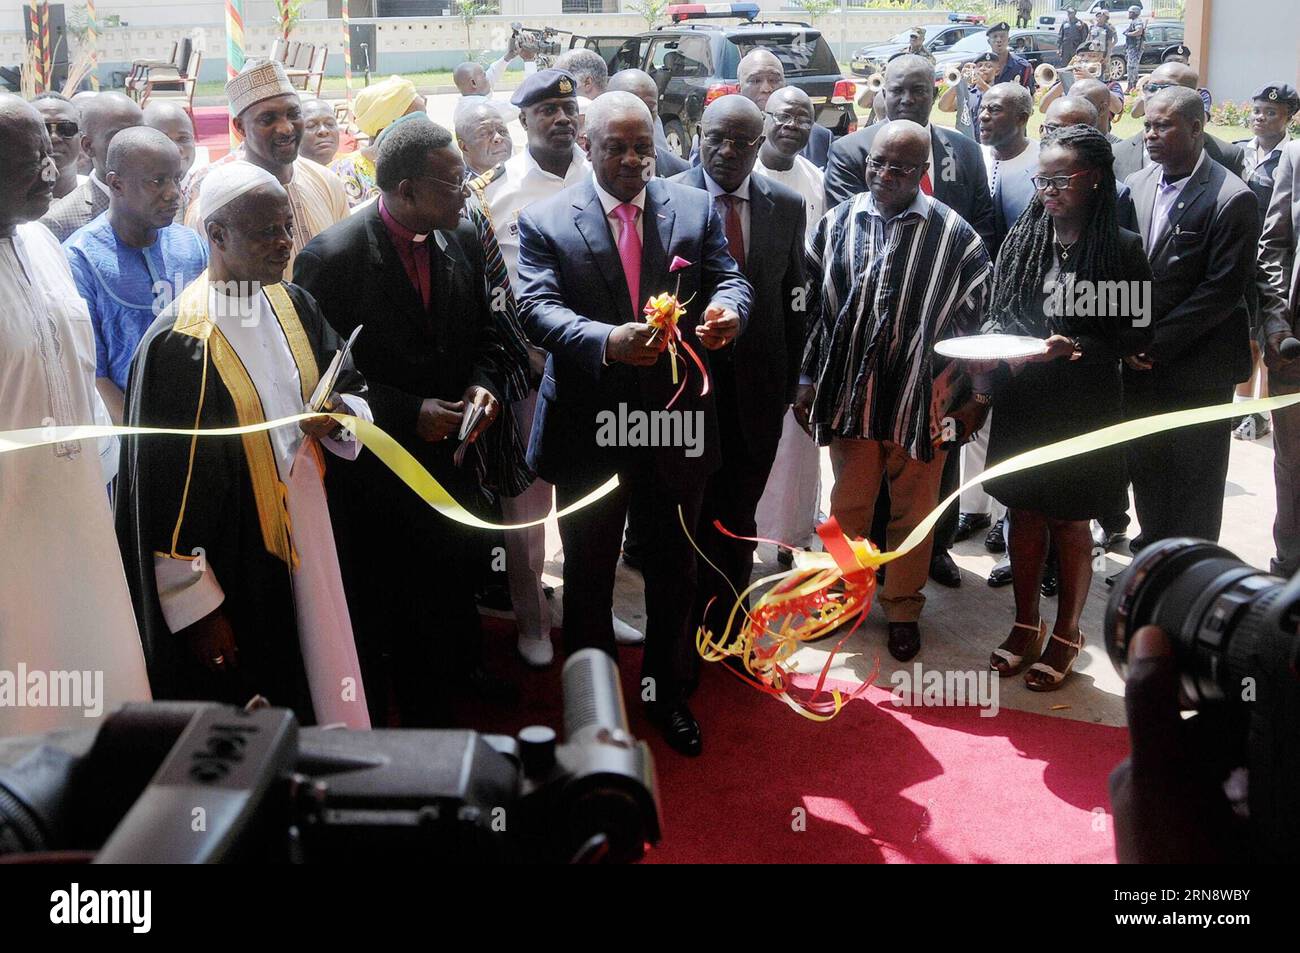 (151107) -- ACCRA, 6. November 2015 -- Ghanas Präsident John Dramani Mahama schneidet das Band während der Eröffnungszeremonie des renovierten parlamentarischen Büros in Accra, der Hauptstadt Ghanas, am 6. November 2015. China's State Hualong Construction Ghana Limited übergab hier am Freitag die fertig sanierte Bürostruktur an das ghanaische parlament. ) GHANA-ACCRA-PARLAMENTARISCHE BÜRORENOVIERUNG LinxXiaowei PUBLICATIONxNOTxINxCHN Accra 6. November 2015 ghanaischer Präsident John Dramani Mahama schneidet das Band während der Eröffnungszeremonie des renovierten Parlamentarischen Büros in Accra, Hauptstadt Ghanas, AUF Nein Stockfoto